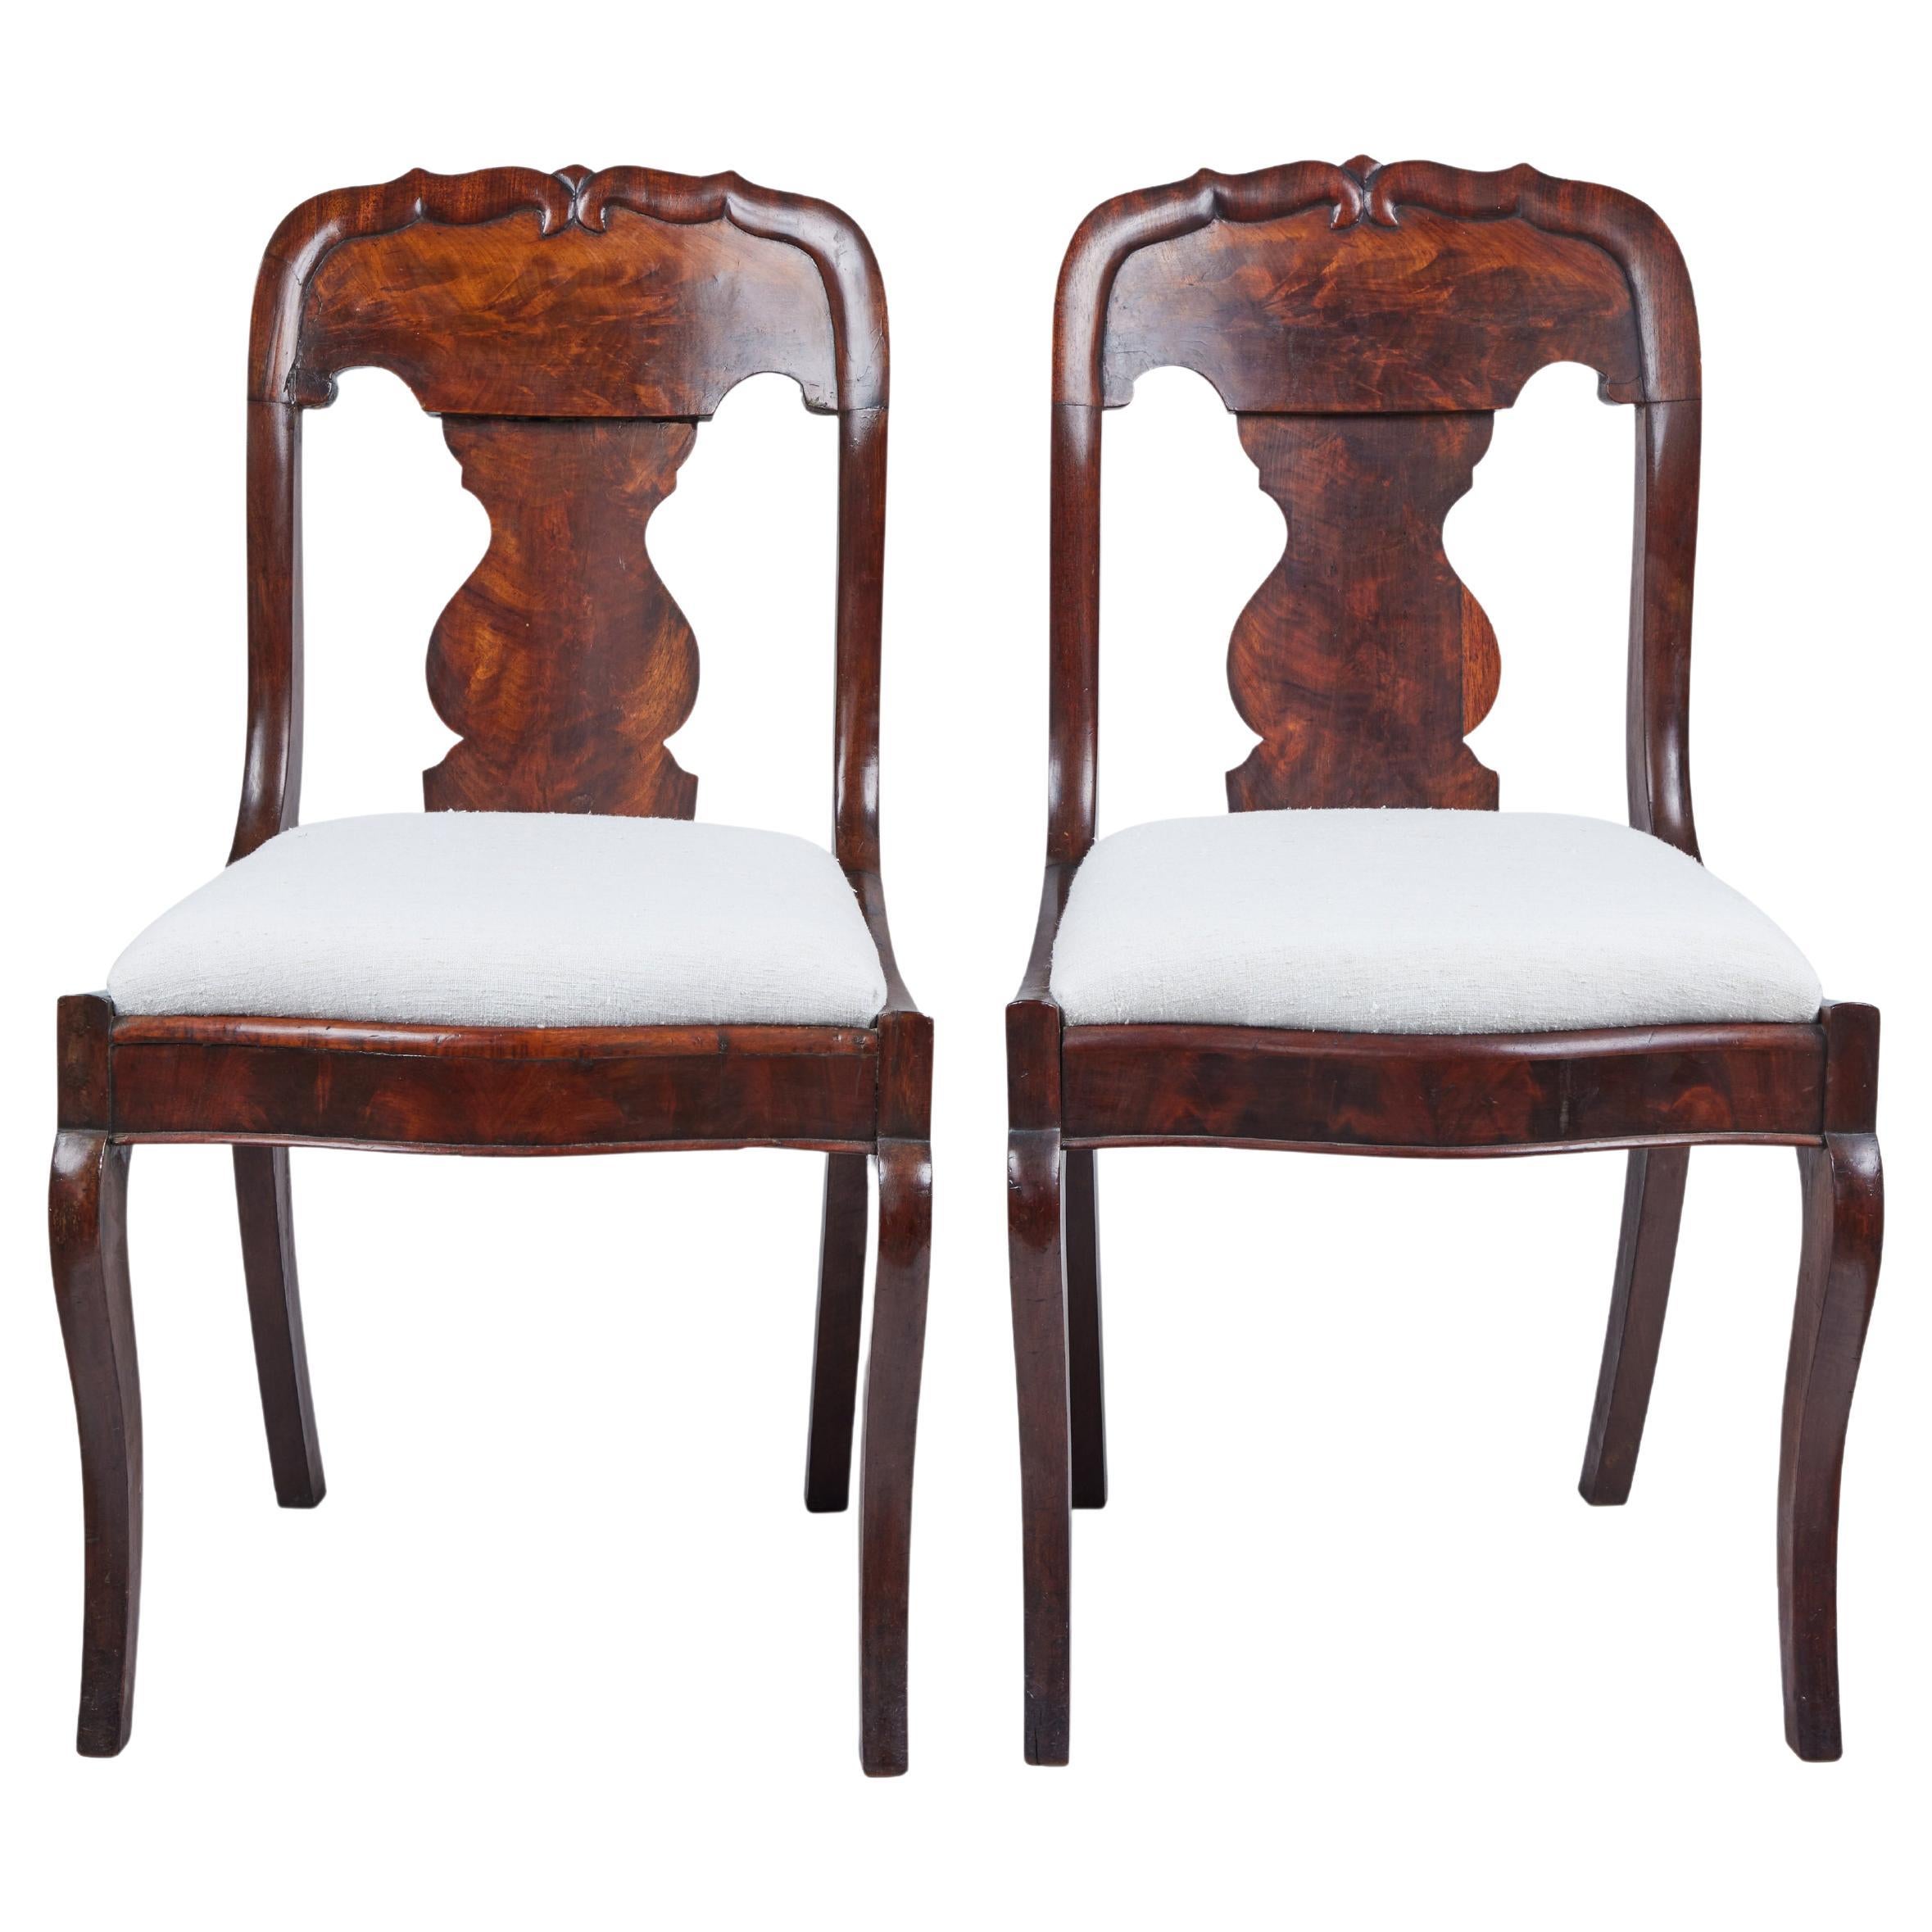 Paire de chaises anciennes de style Queen Anne en bois de ronce de noyer